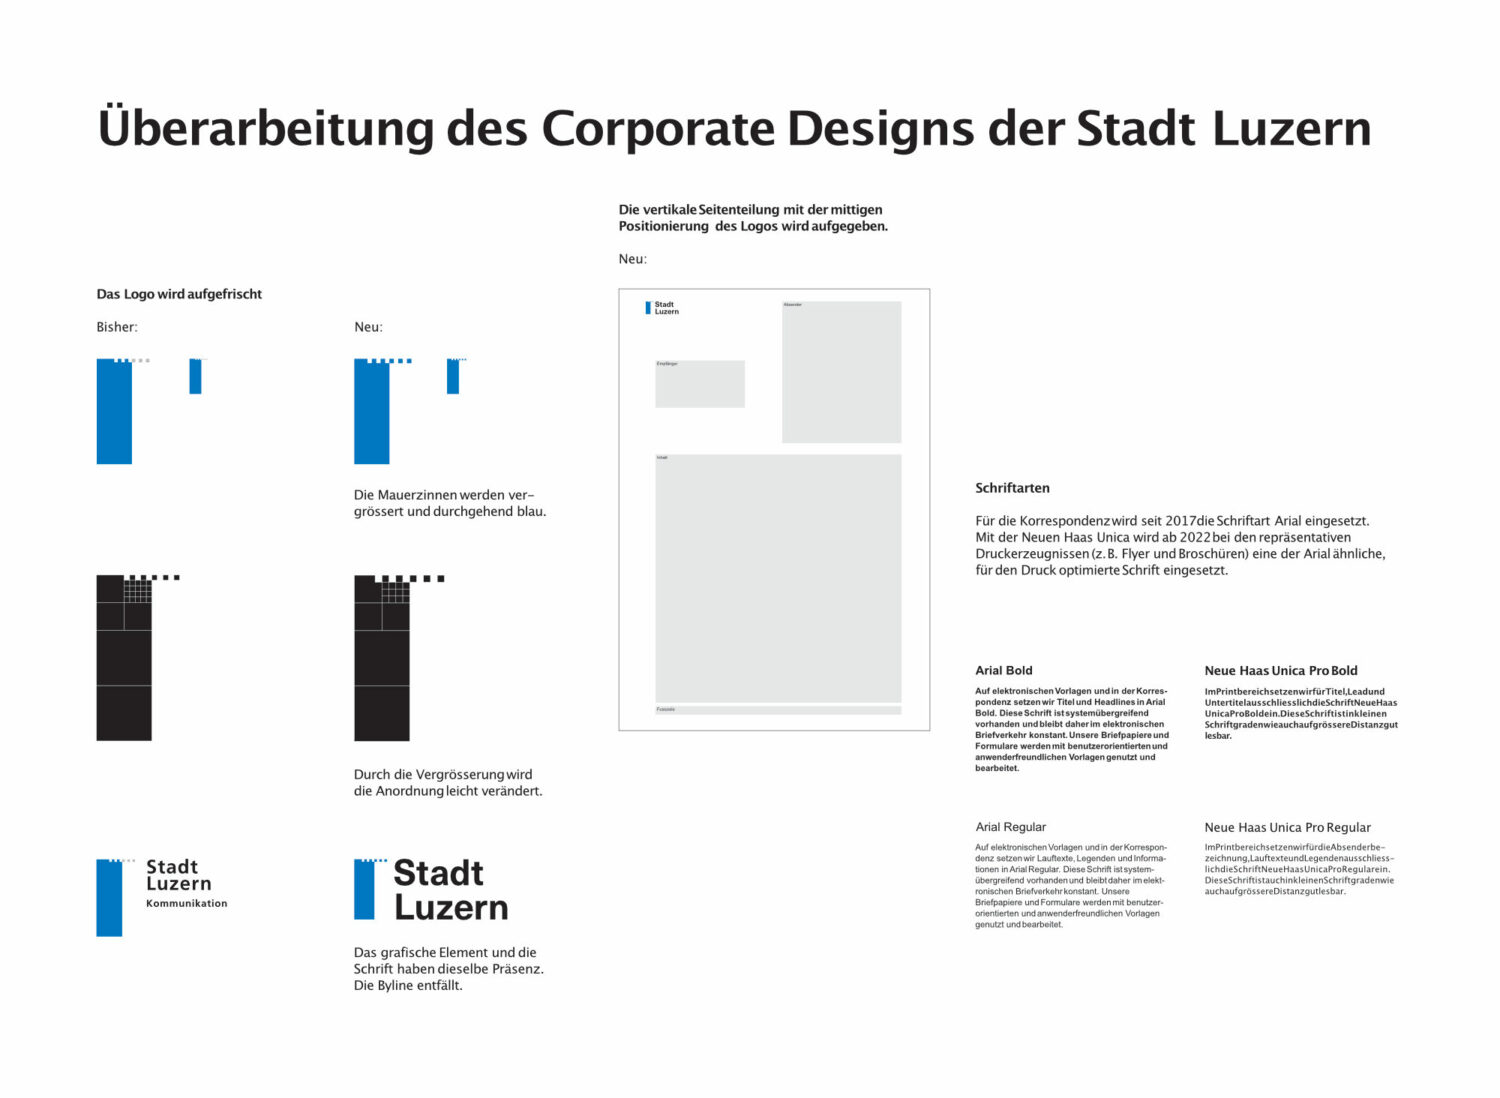 Stadt Luzern – Überarbeitung des Corporate Designs. Quelle: Stadtverwaltung Luzern